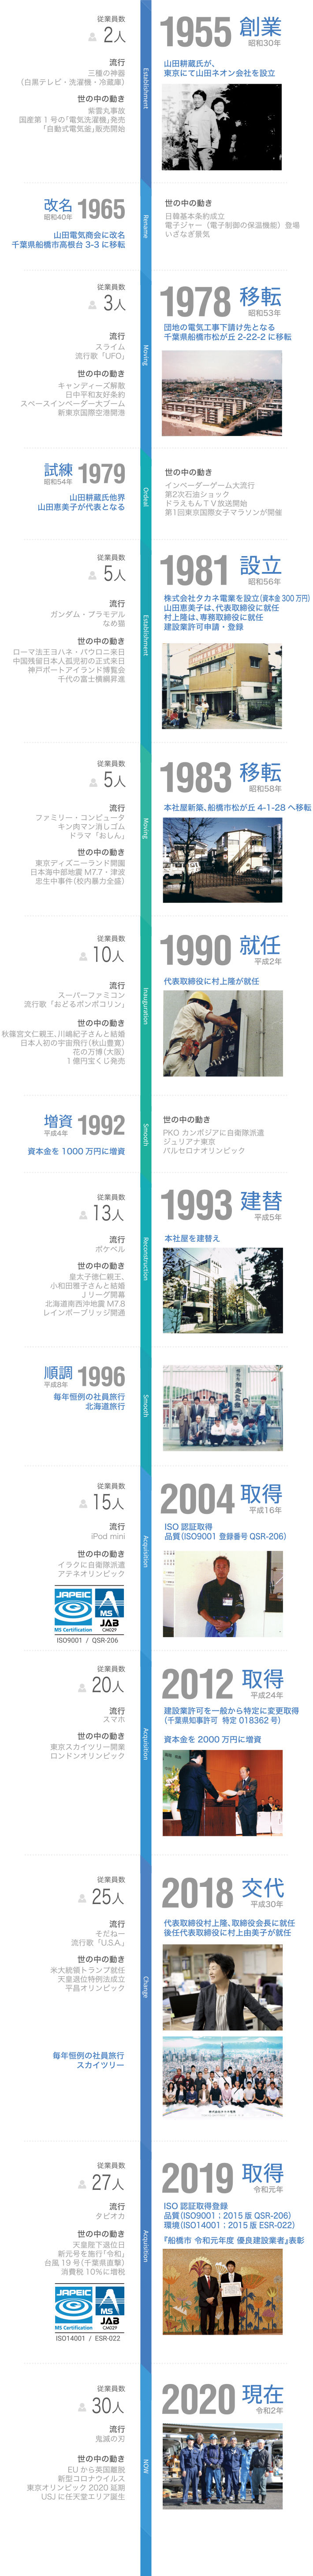 タカネ電業HISTORY年表